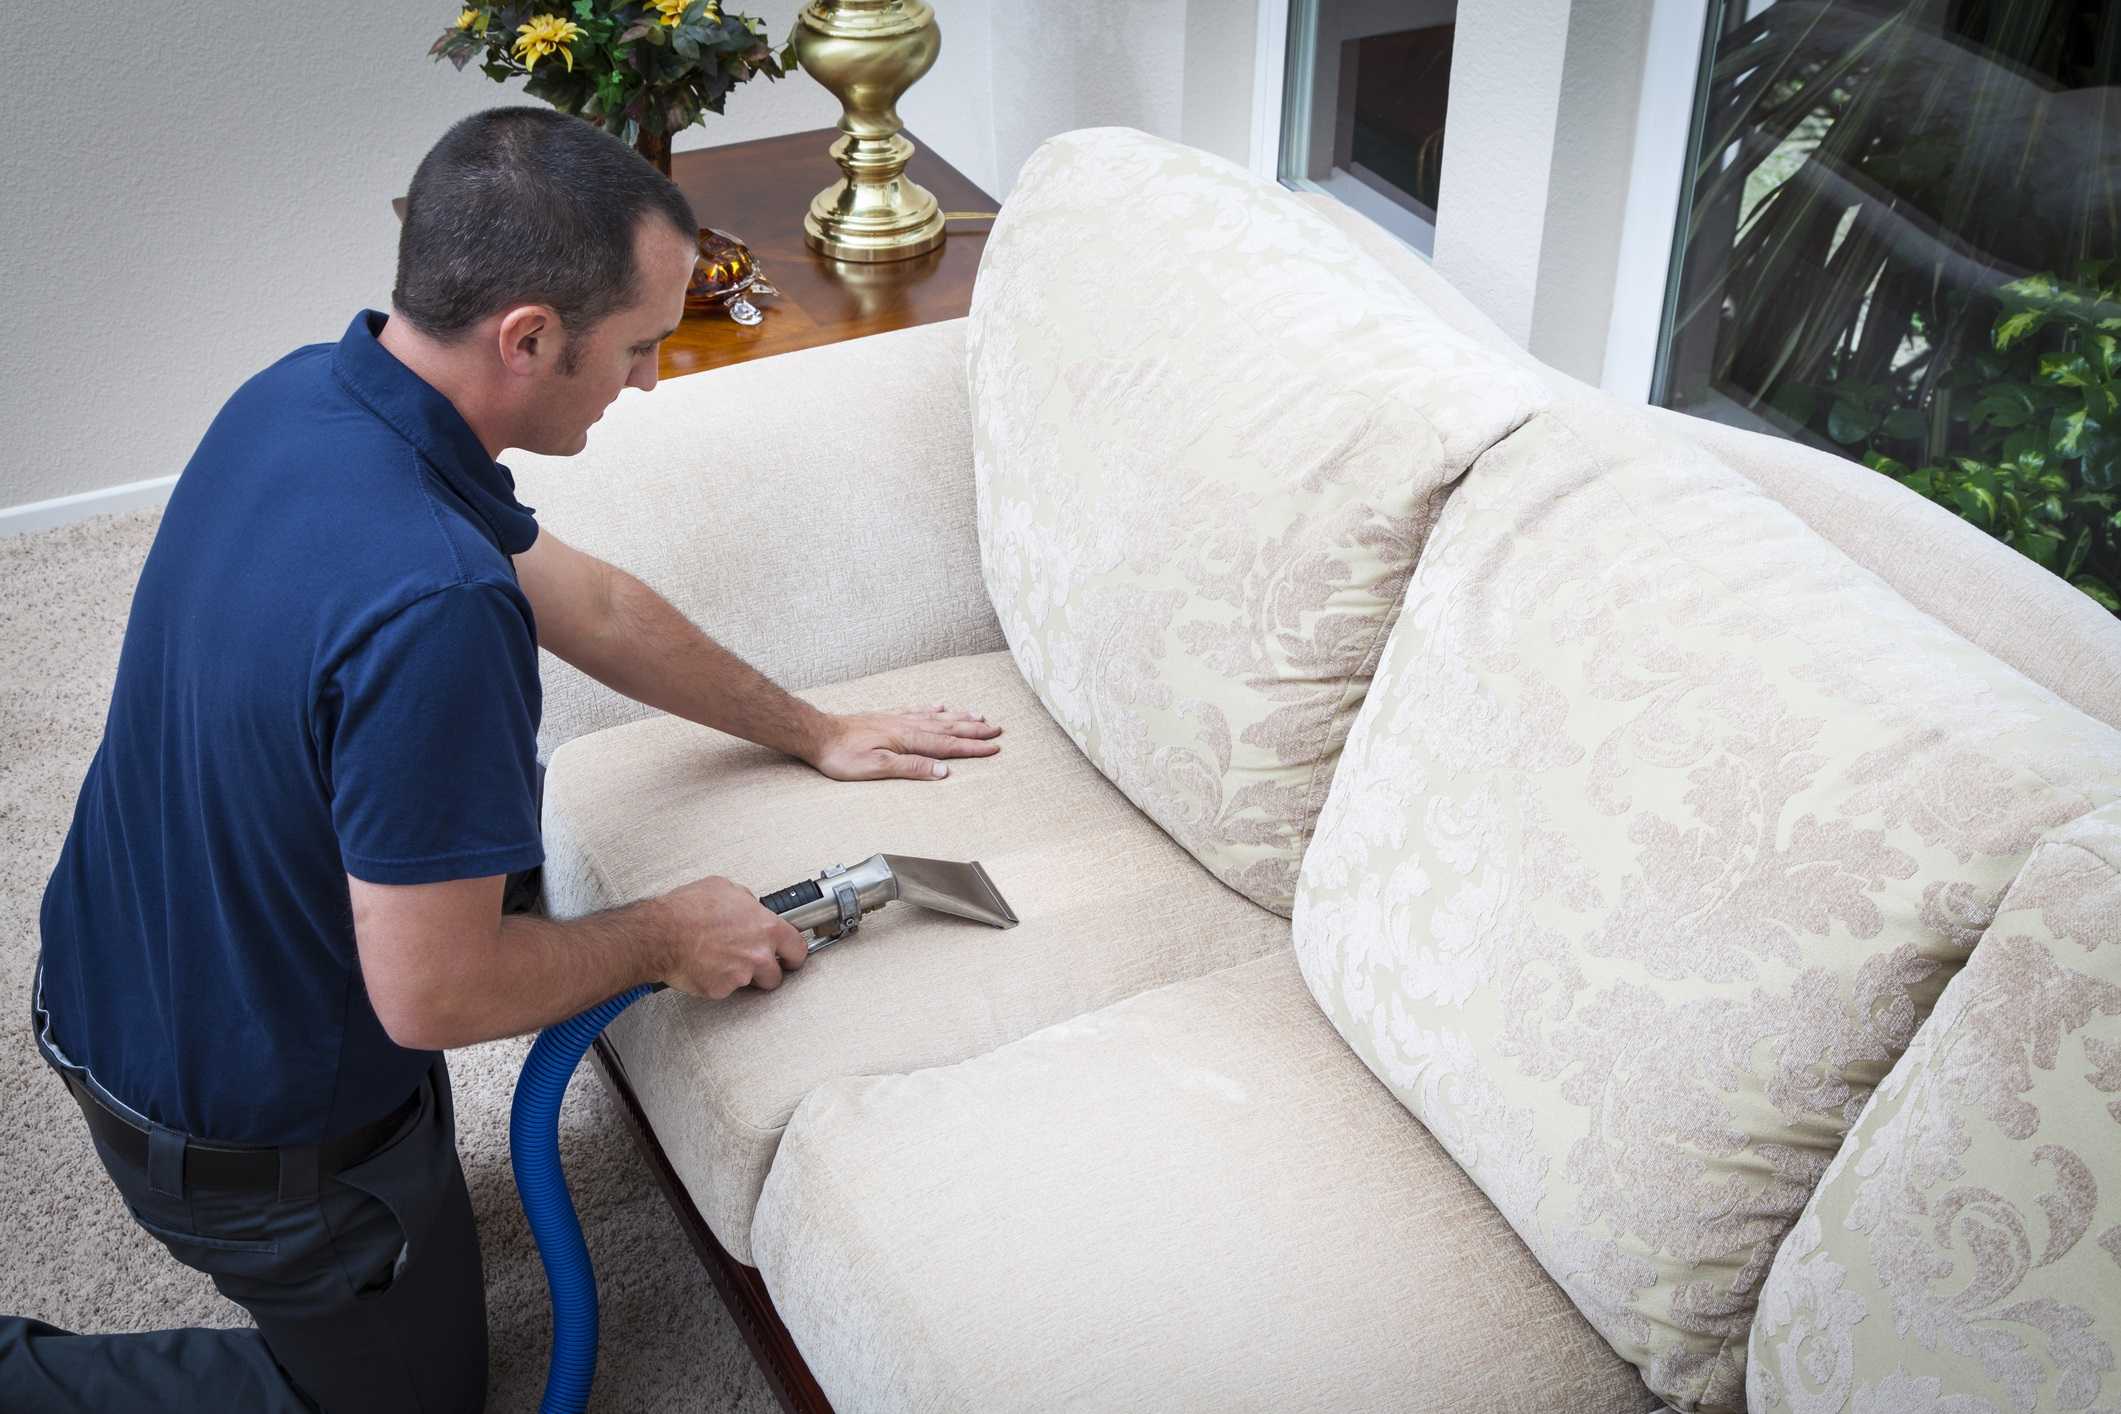 Лучшие способы, чтобы почистить диван из ткани в домашних условиях от грязи